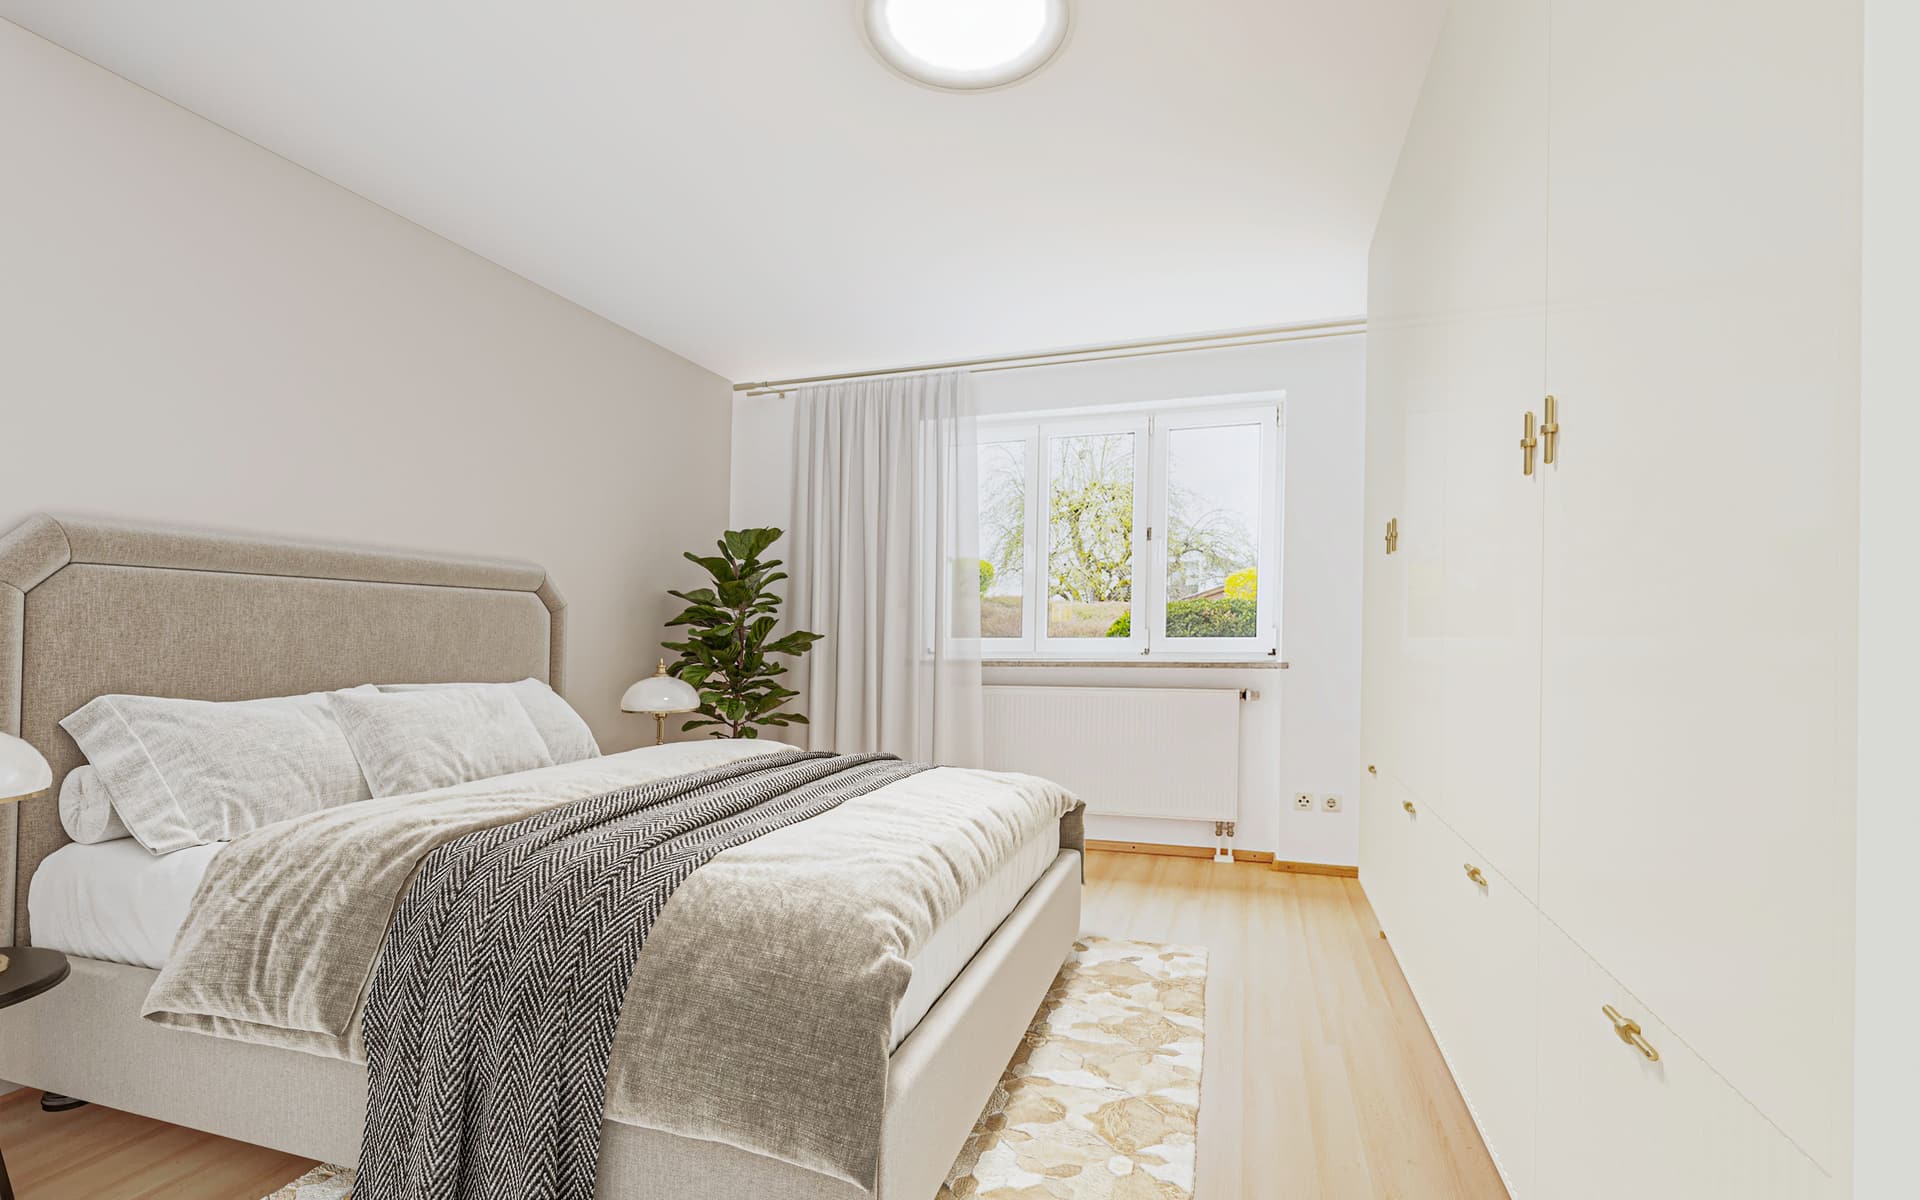 Zauberhafte 3-Zimmer Gartenwohnung in Erding/Langengeisling - Schlafzimmer mit möglicher Einrichtung